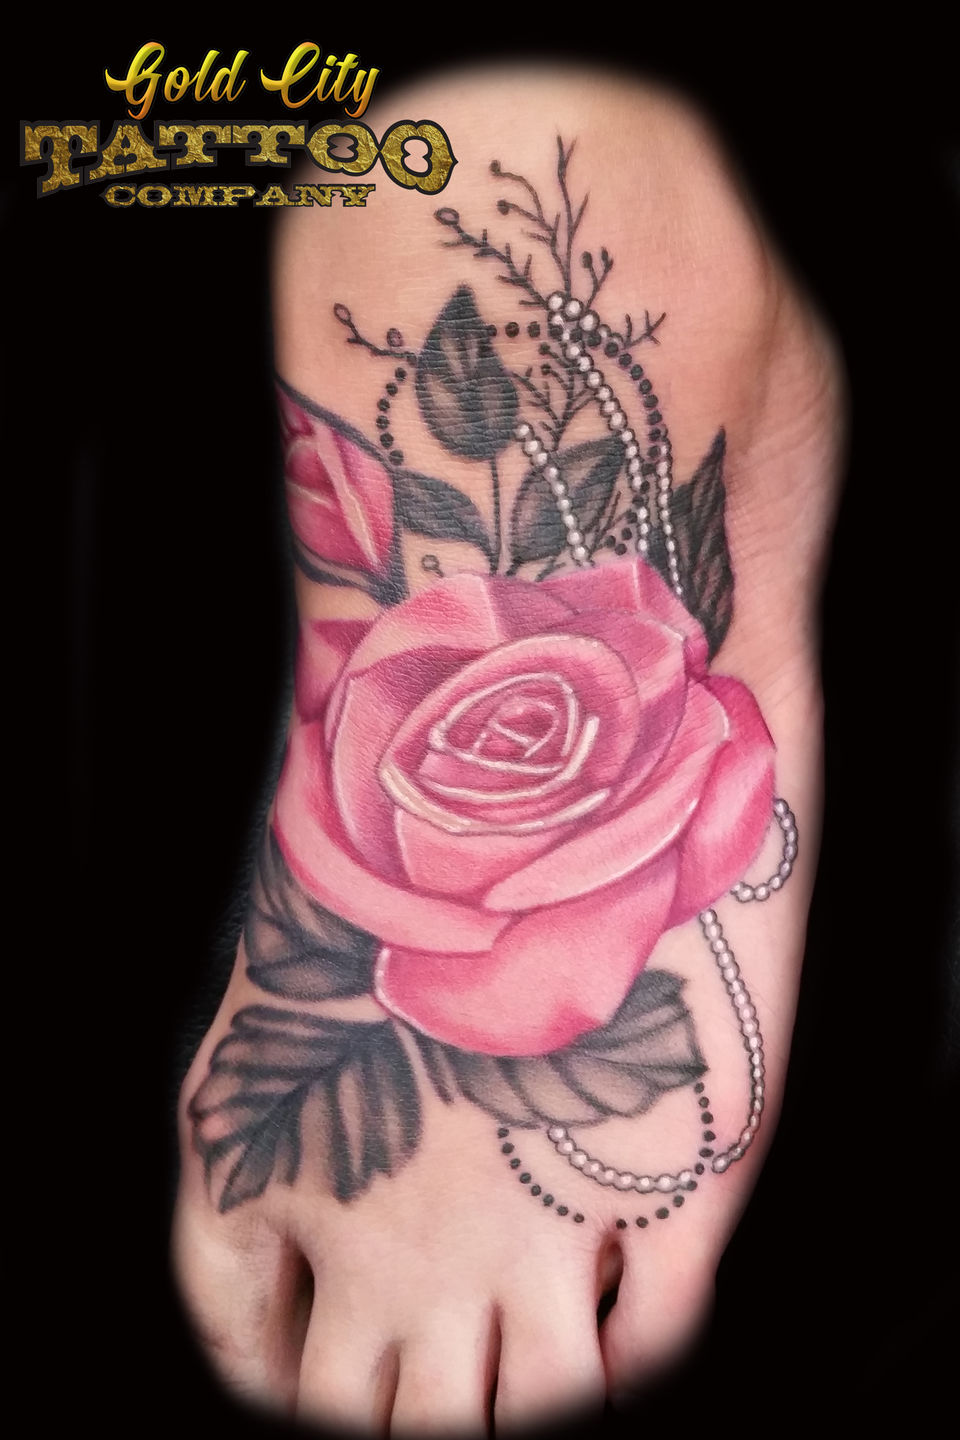 Ryan El Dugi Lewis : Tattoos : Realistic : White pink rose tattoo